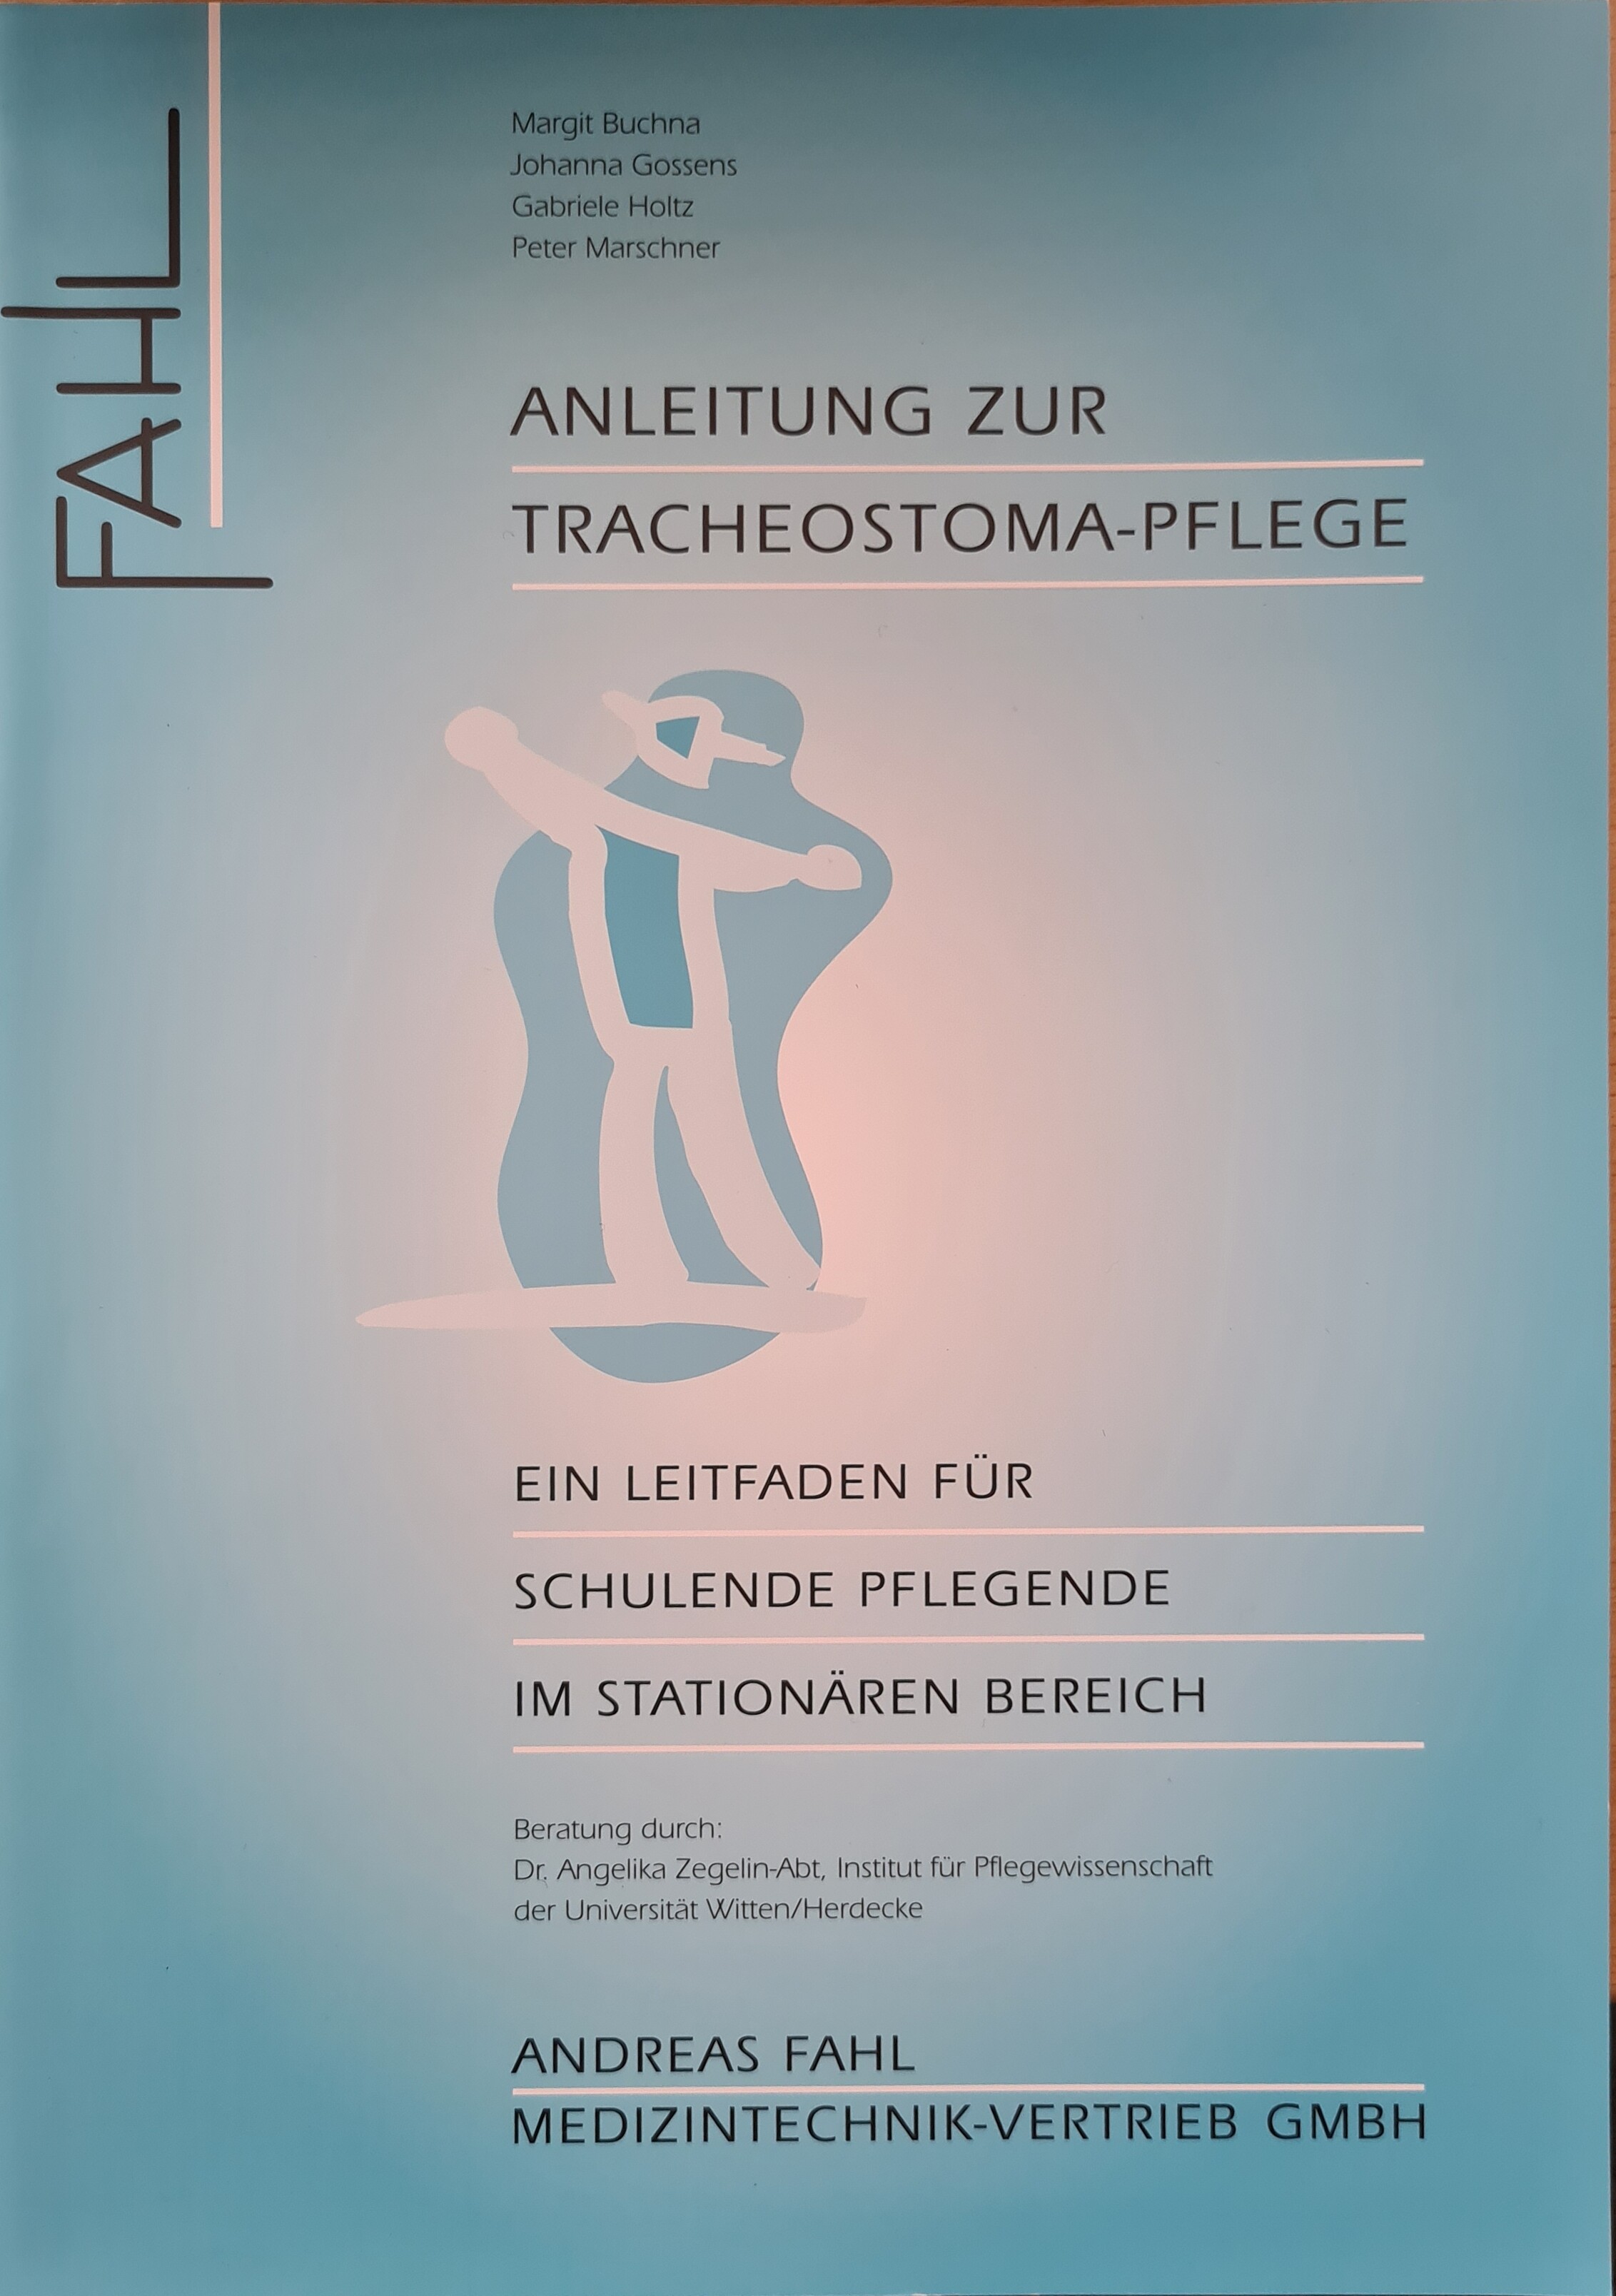 Anleitung zur Tracheostoma-Pflege (Krankenhausmuseum Bielefeld e.V. CC BY-NC-SA)